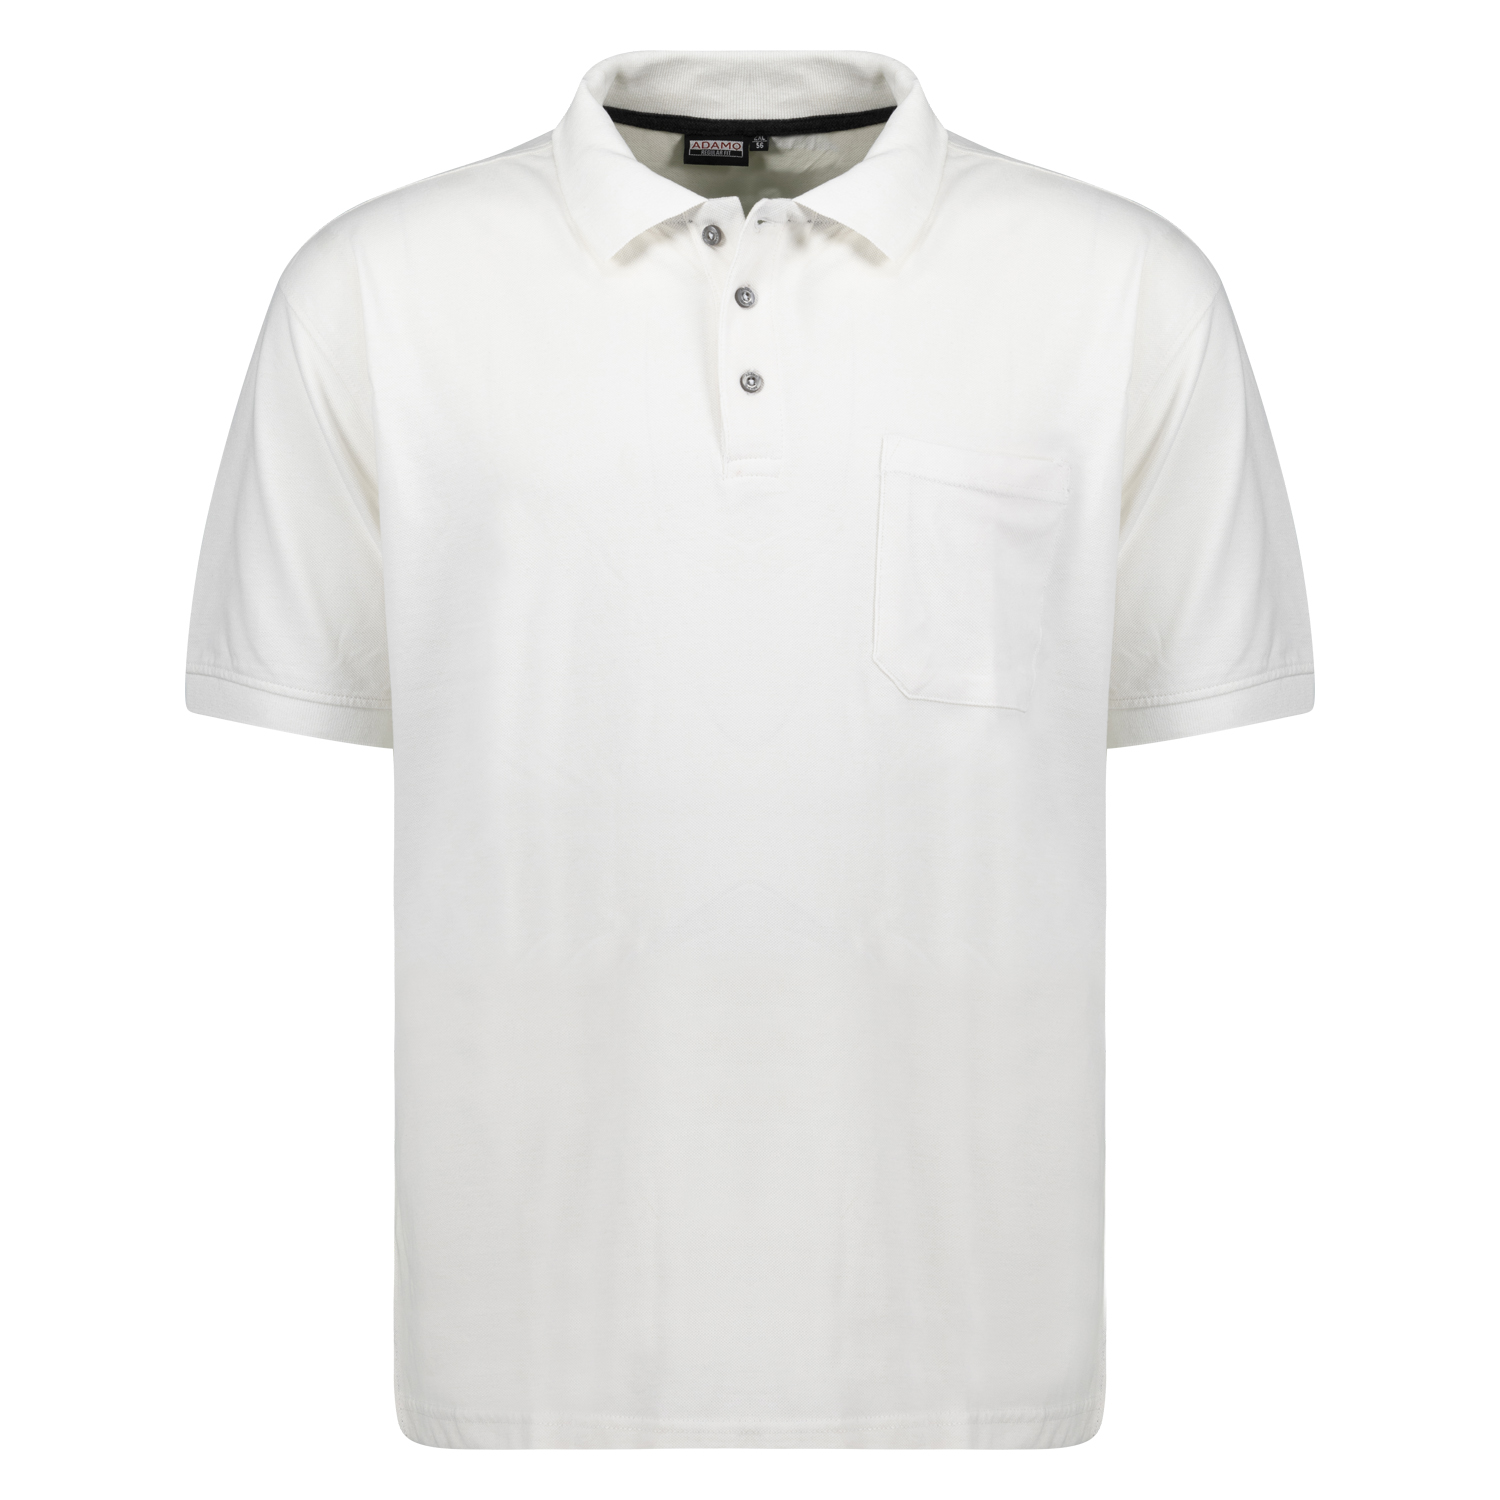 Polo shirt en blanc à manches courtes série Klaas REGULAR FIT by ADAMO en grandes tailles jusqu'au 10XL